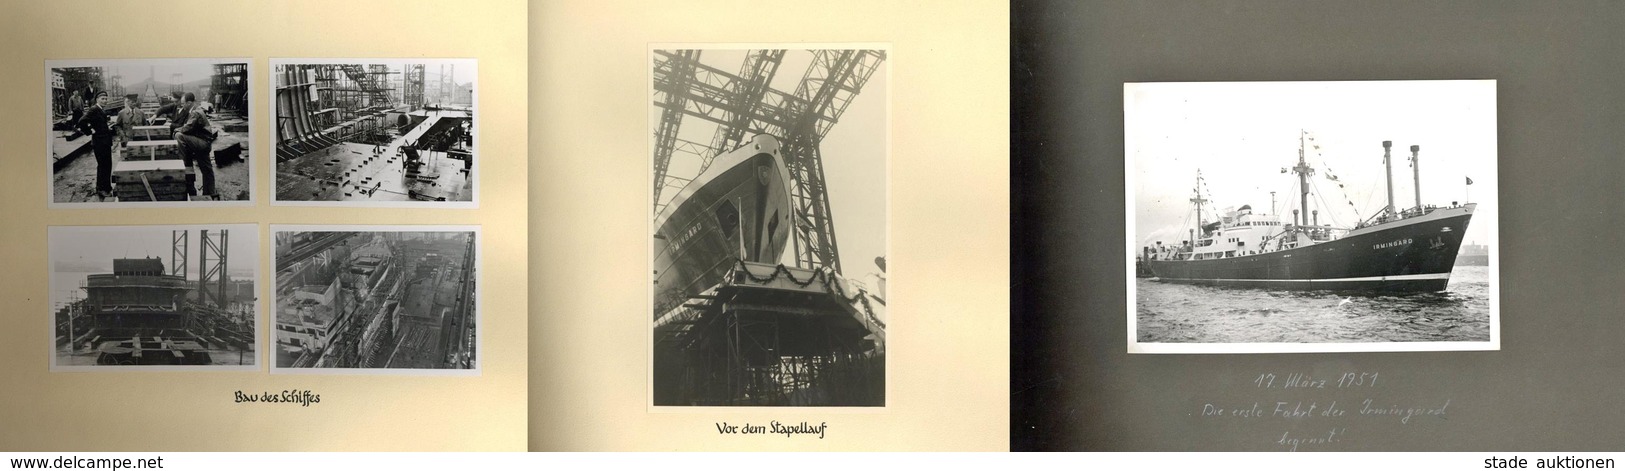 Schiff IRMGARD 1951, 2 Fotoalben Mit über 120 Fotos Vom Bau über Stapellauf Bis Zur 1. Fahrt, Hochinteressante Dokumenta - Guerre